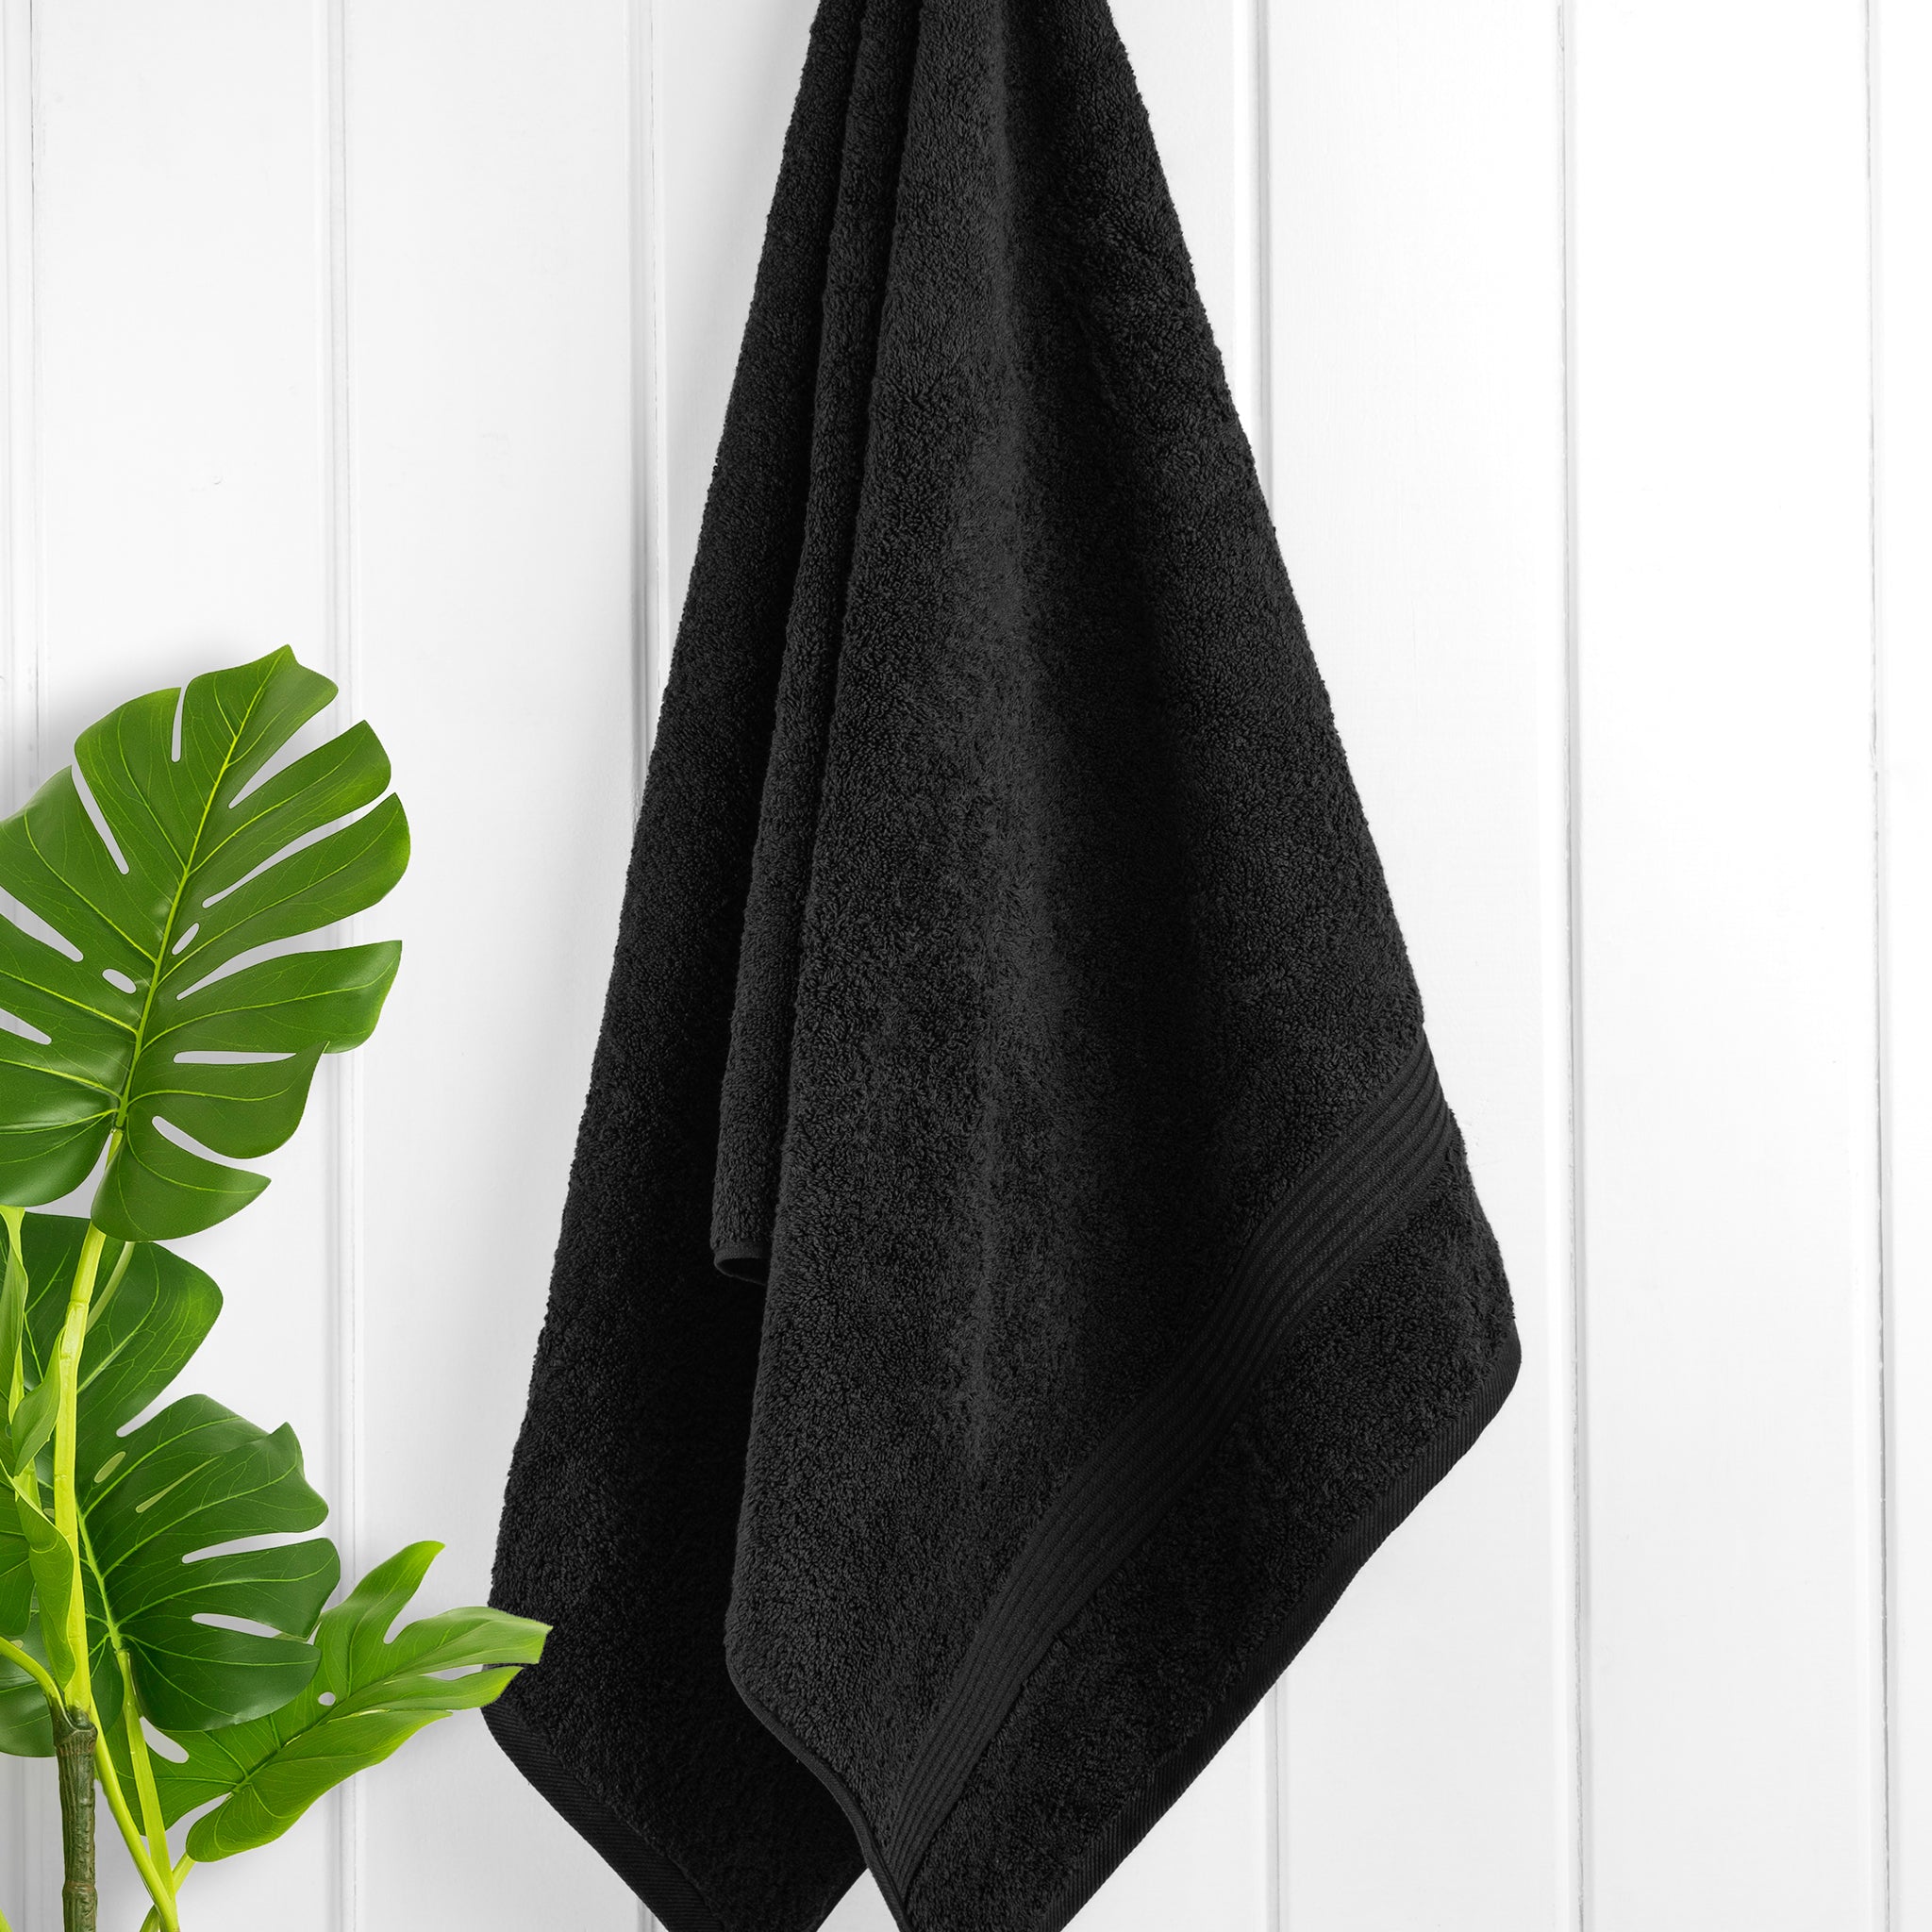 American Soft Linen Bekos 100% Cotton Turkish Towels, 4 Piece Bath Towel Set -black-02